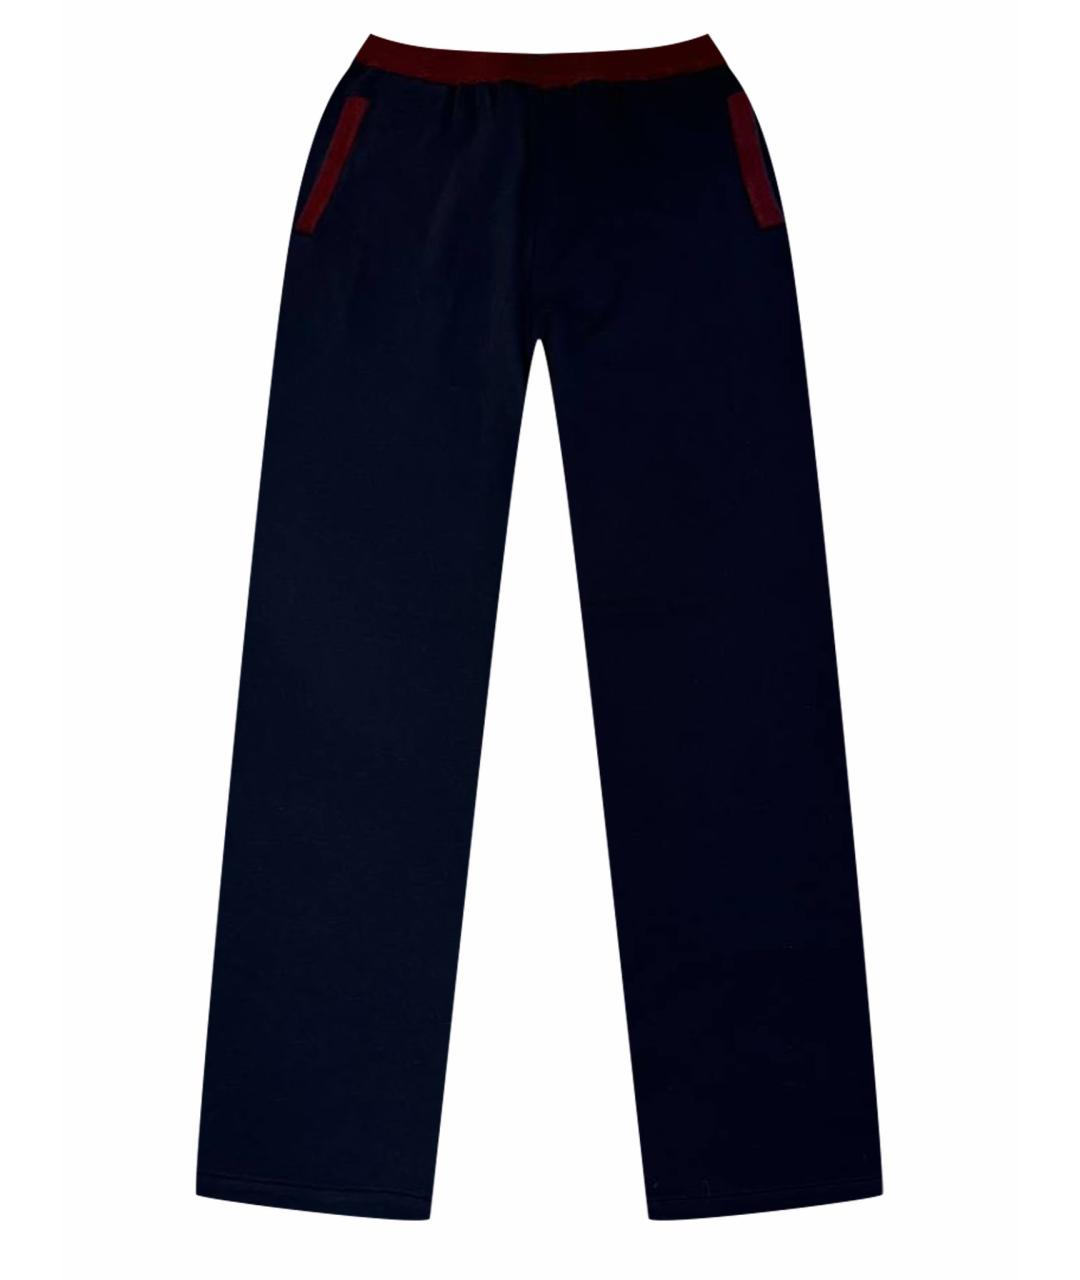 BERTOLO LUXURY MENSWEAR Классические брюки, фото 1